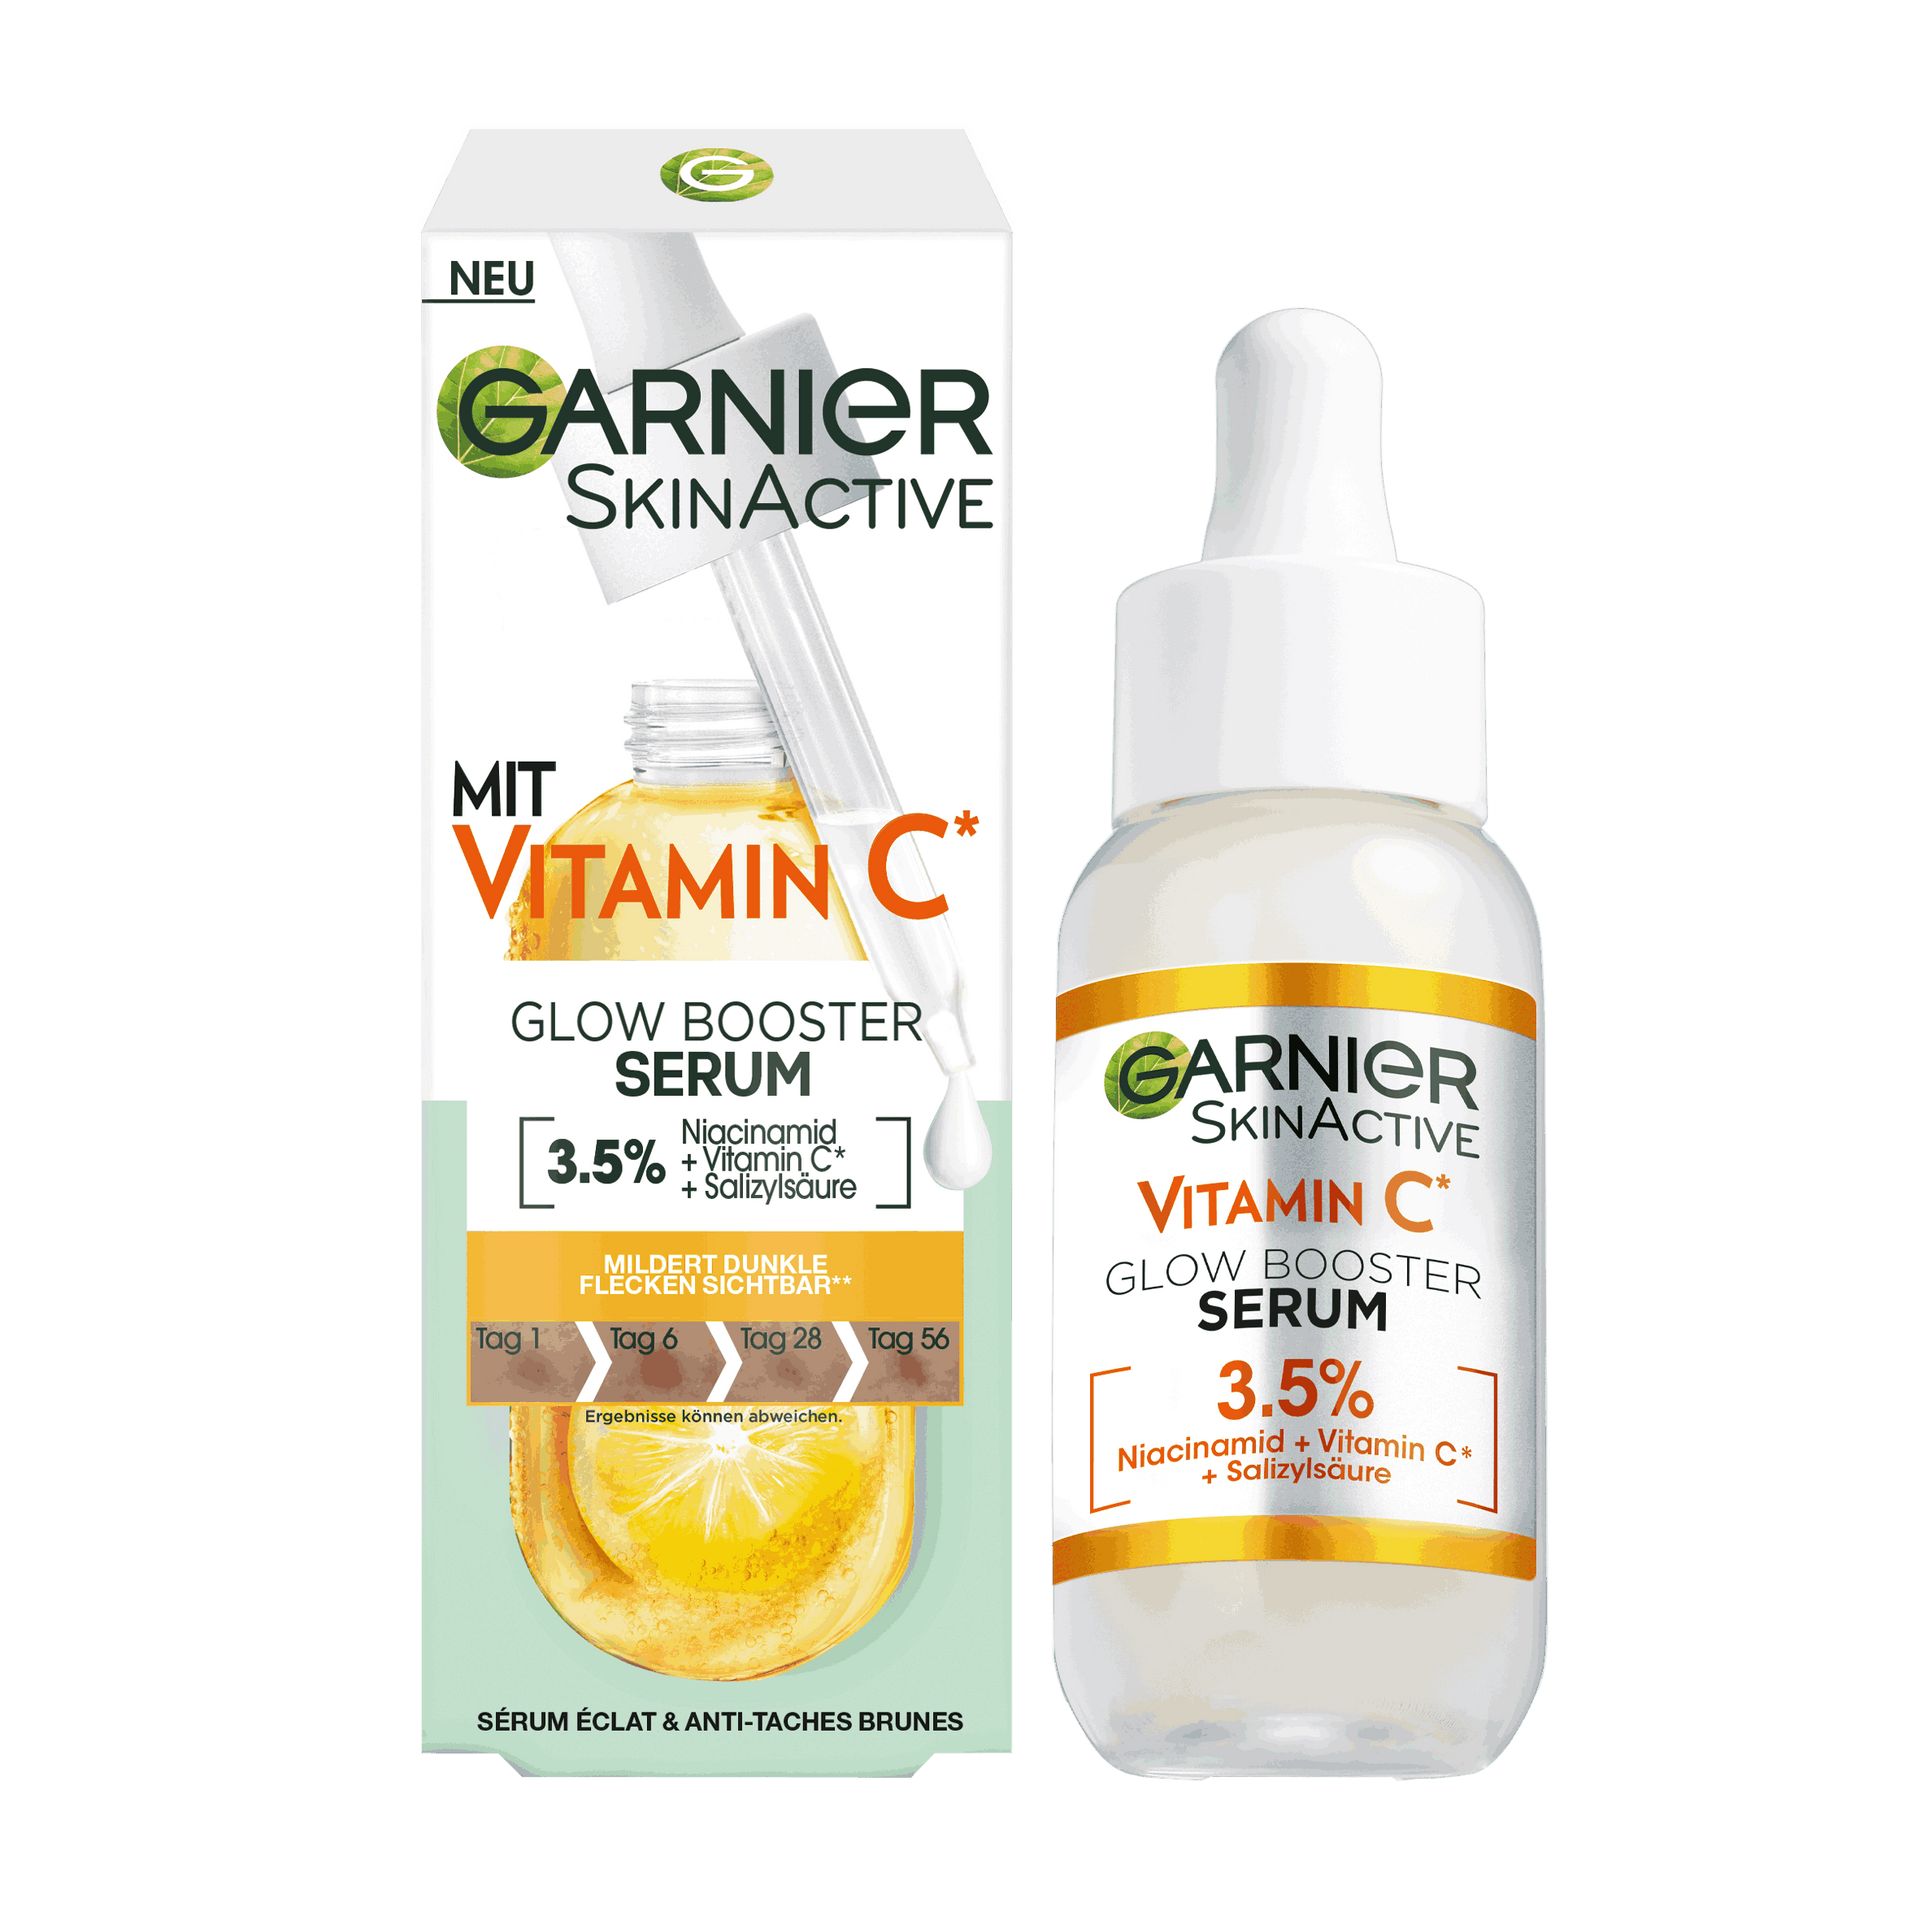 gesichtspflege gesichtspflege marken vitamin c garnier vitamin c glow booster serum mit 3 5 niacinamid vitamin c salizylsaeure